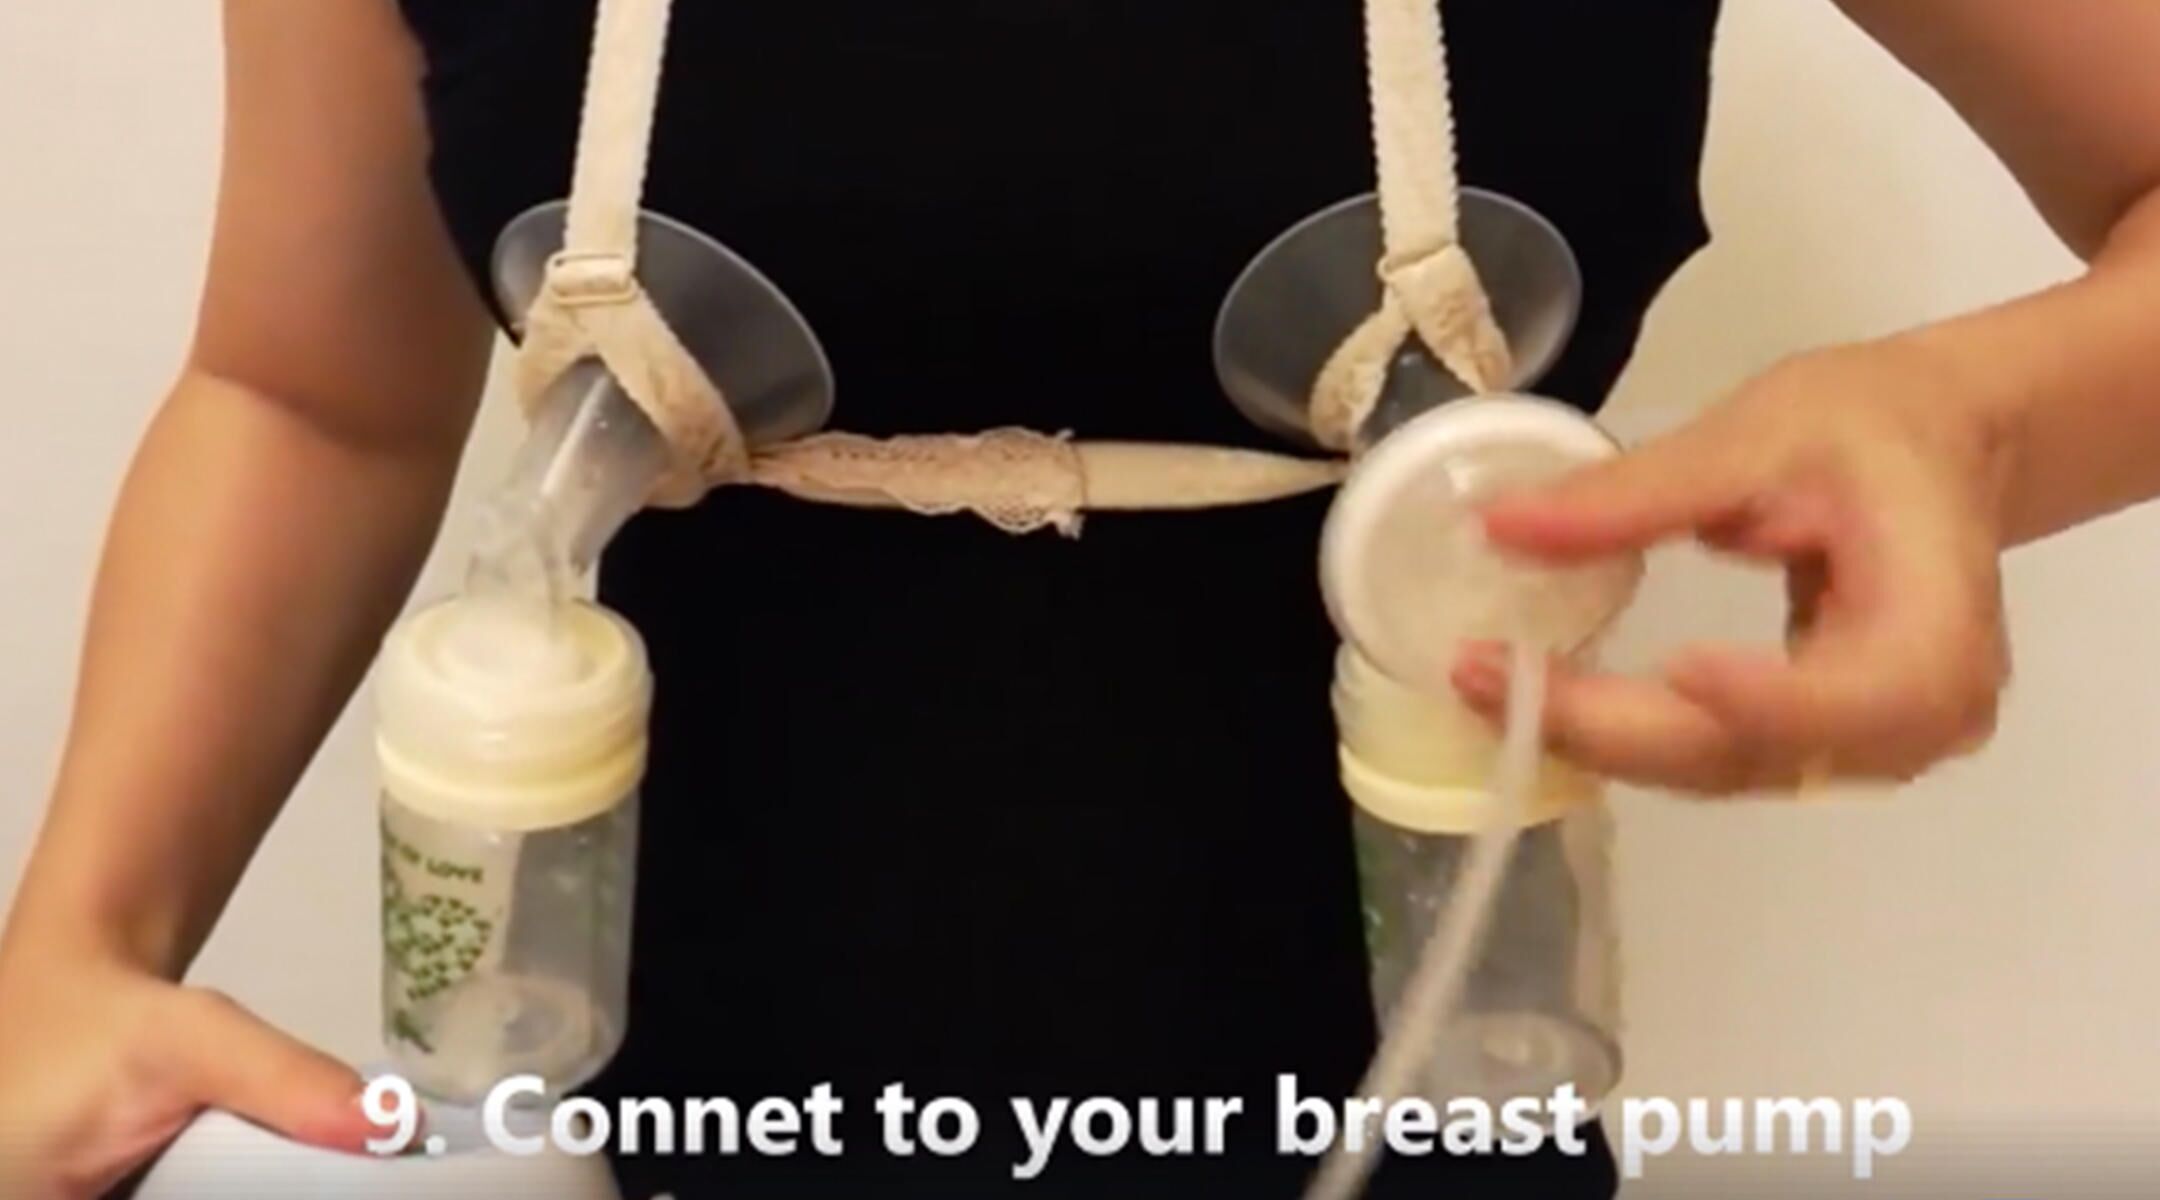 DIY Pumping Bra Hack - The Breastfeeding Den